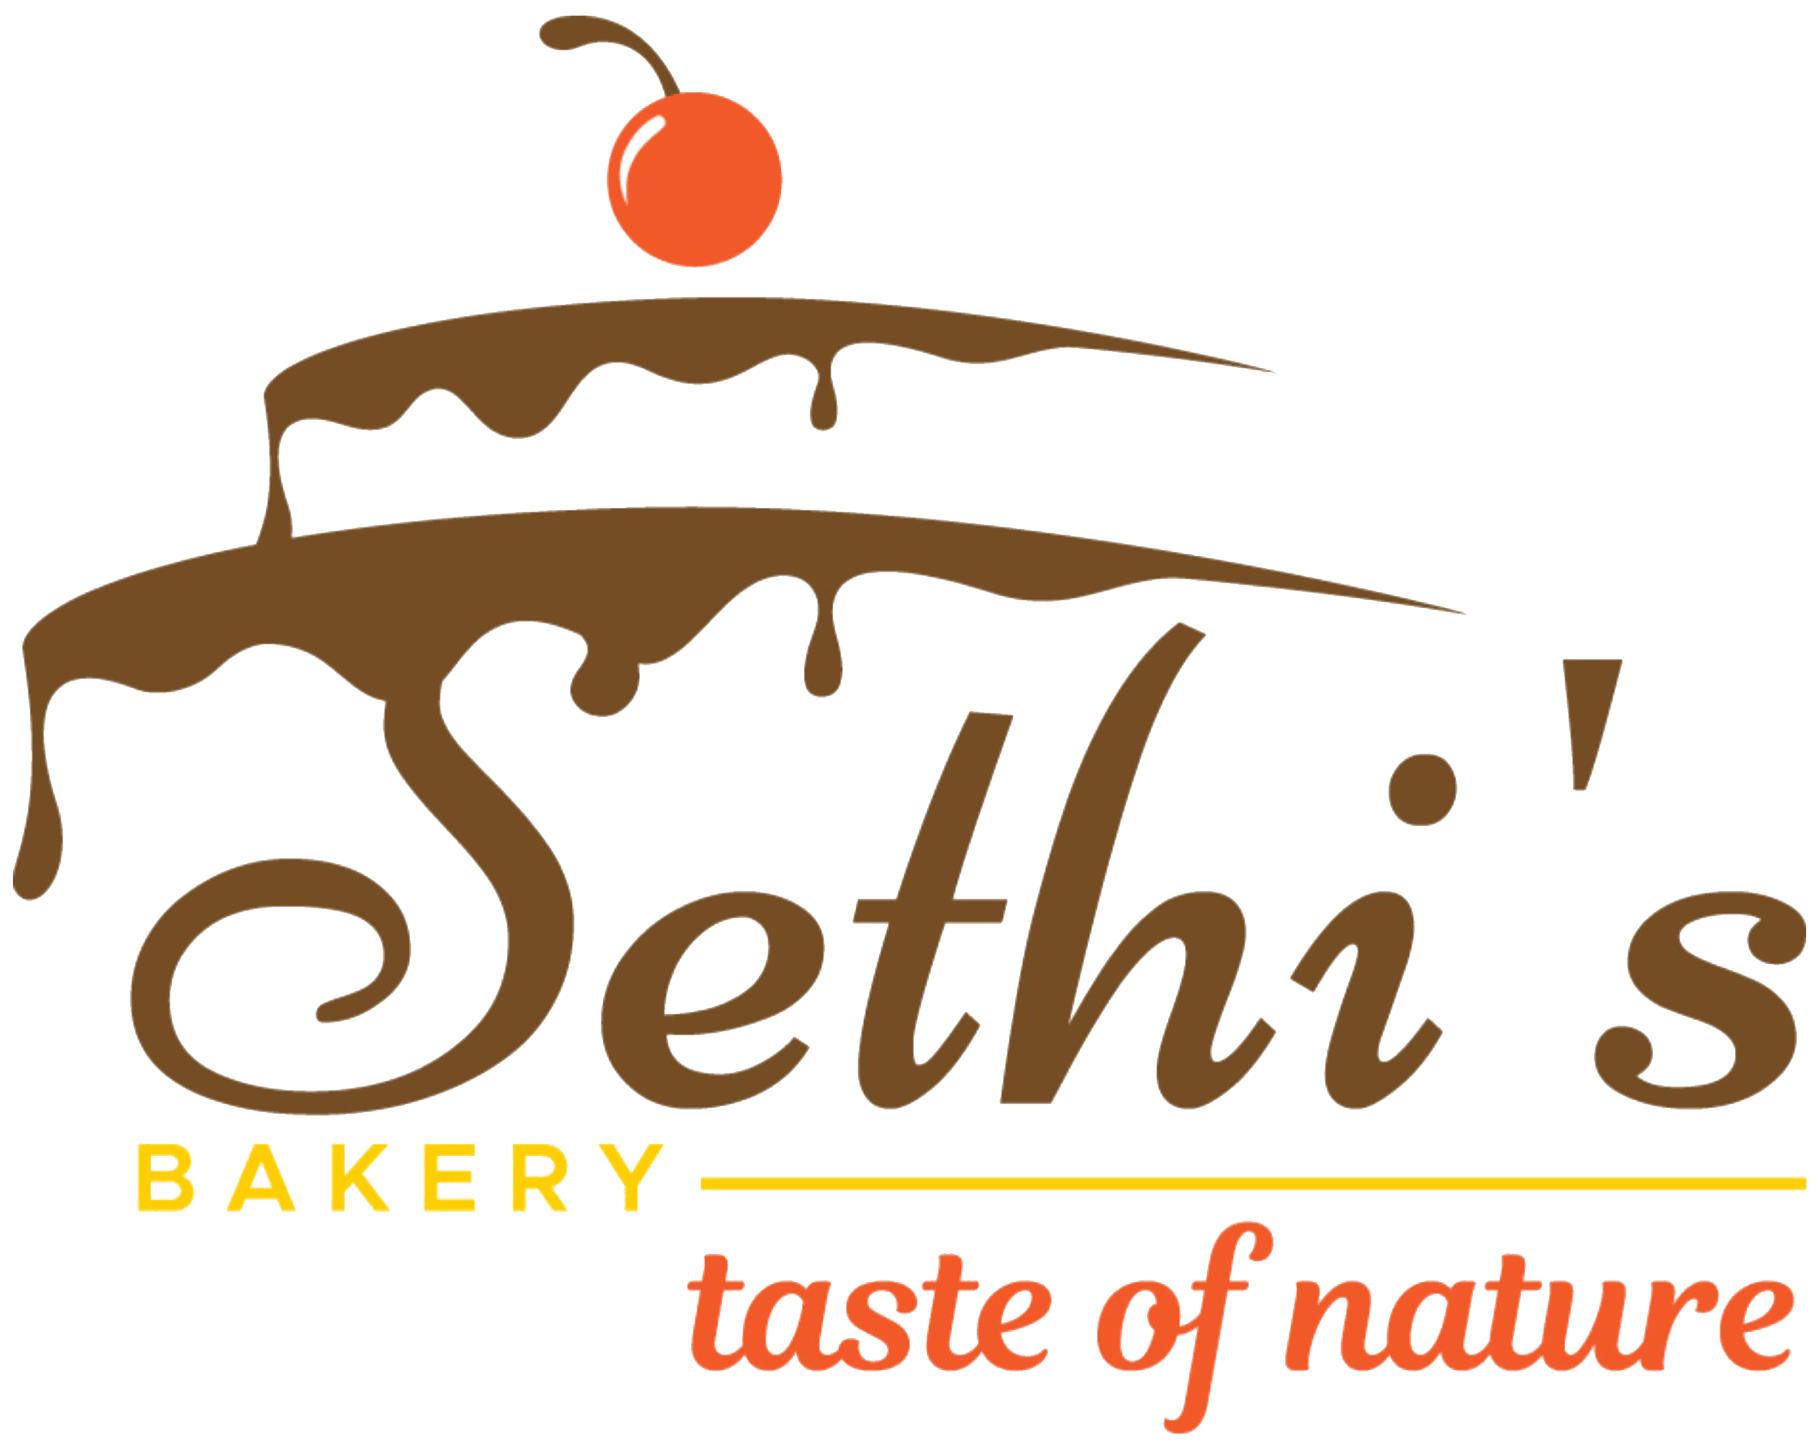 Sethi's Bakery